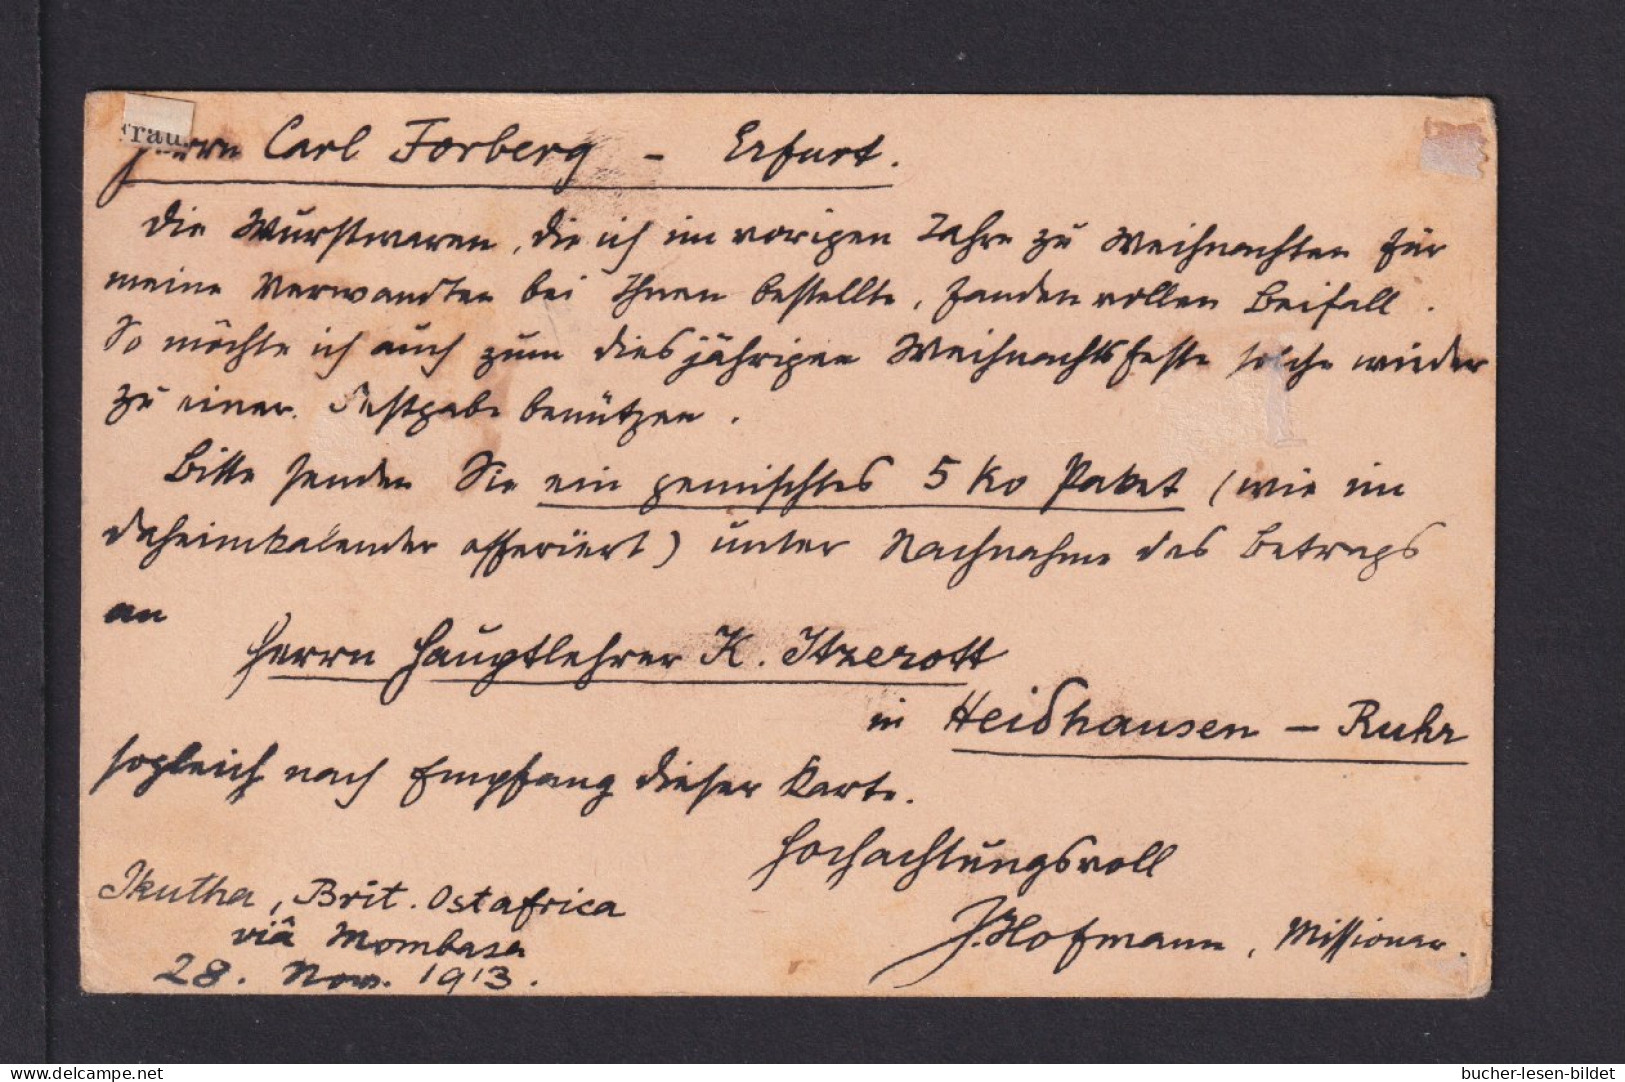 1913 - 6 C. Ganzsache Aus IKUTHA, Aufgabe In KIBWEZI Nach Erfurt - Herrschaften Von Ostafrika Und Uganda